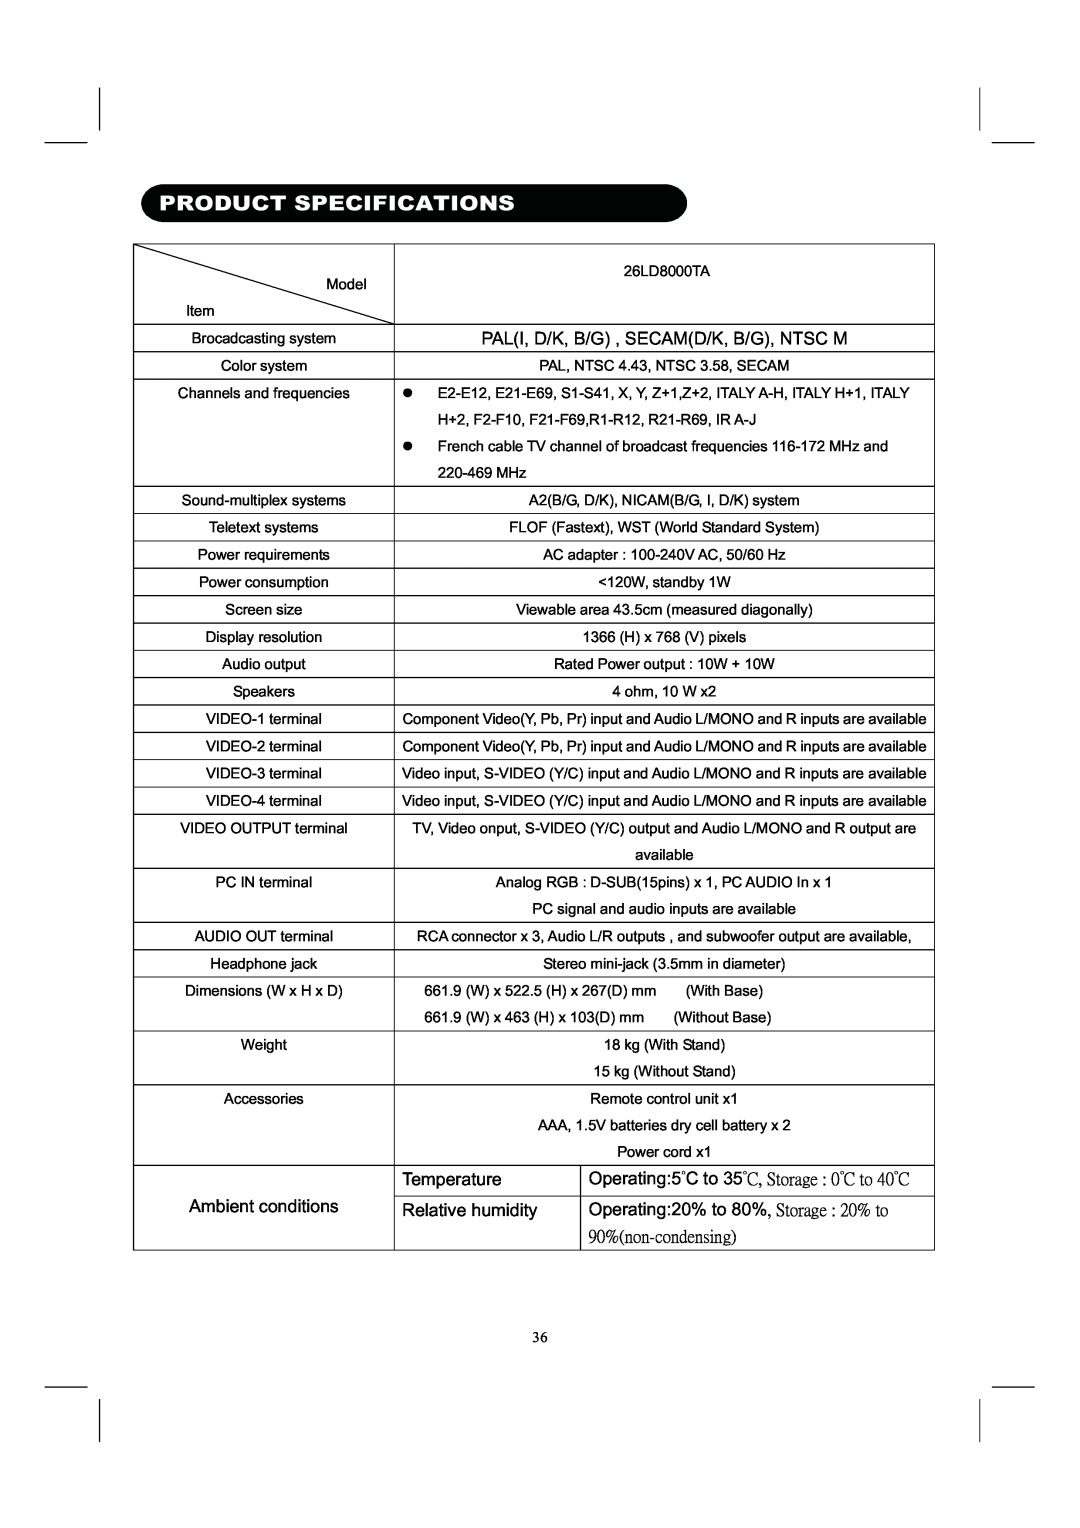 Hitachi 26LD8000TA Product Specifications, Temperature, Operating5̓C to 35̓˖ʿʳ˦̇̂̅˴˺˸ʳˍʳ˃̓˖ʳ̇̂ʳˇ˃̓˖, Relative humidity 